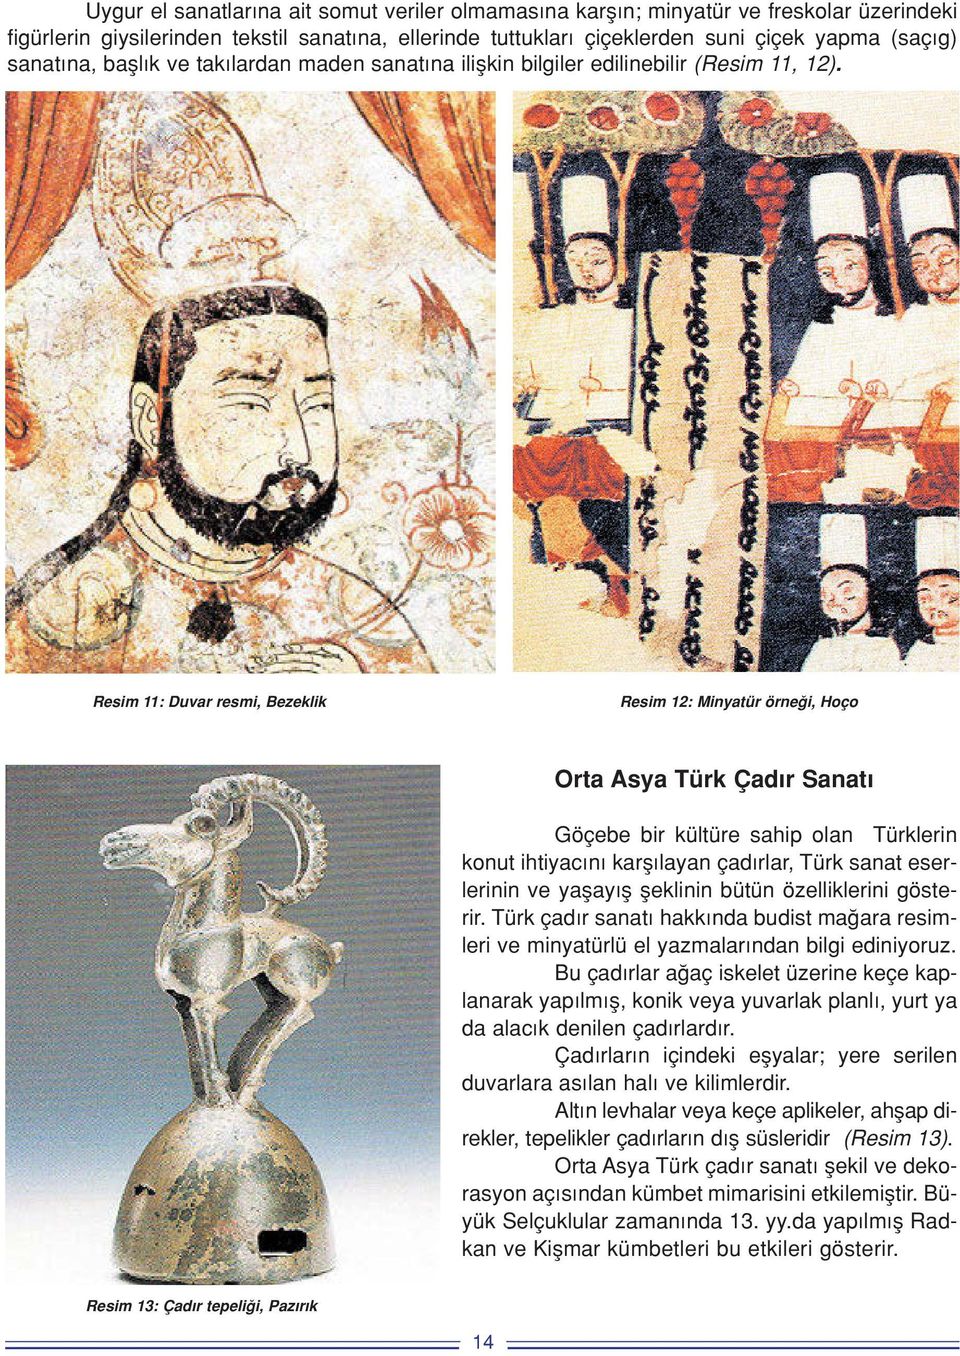 Resim 11: Duvar resmi, Bezeklik Resim 12: Minyatür örne i, Hoço Orta Asya Türk Çad r Sanat Göçebe bir kültüre sahip olan Türklerin konut ihtiyac n karfl layan çad rlar, Türk sanat eserlerinin ve